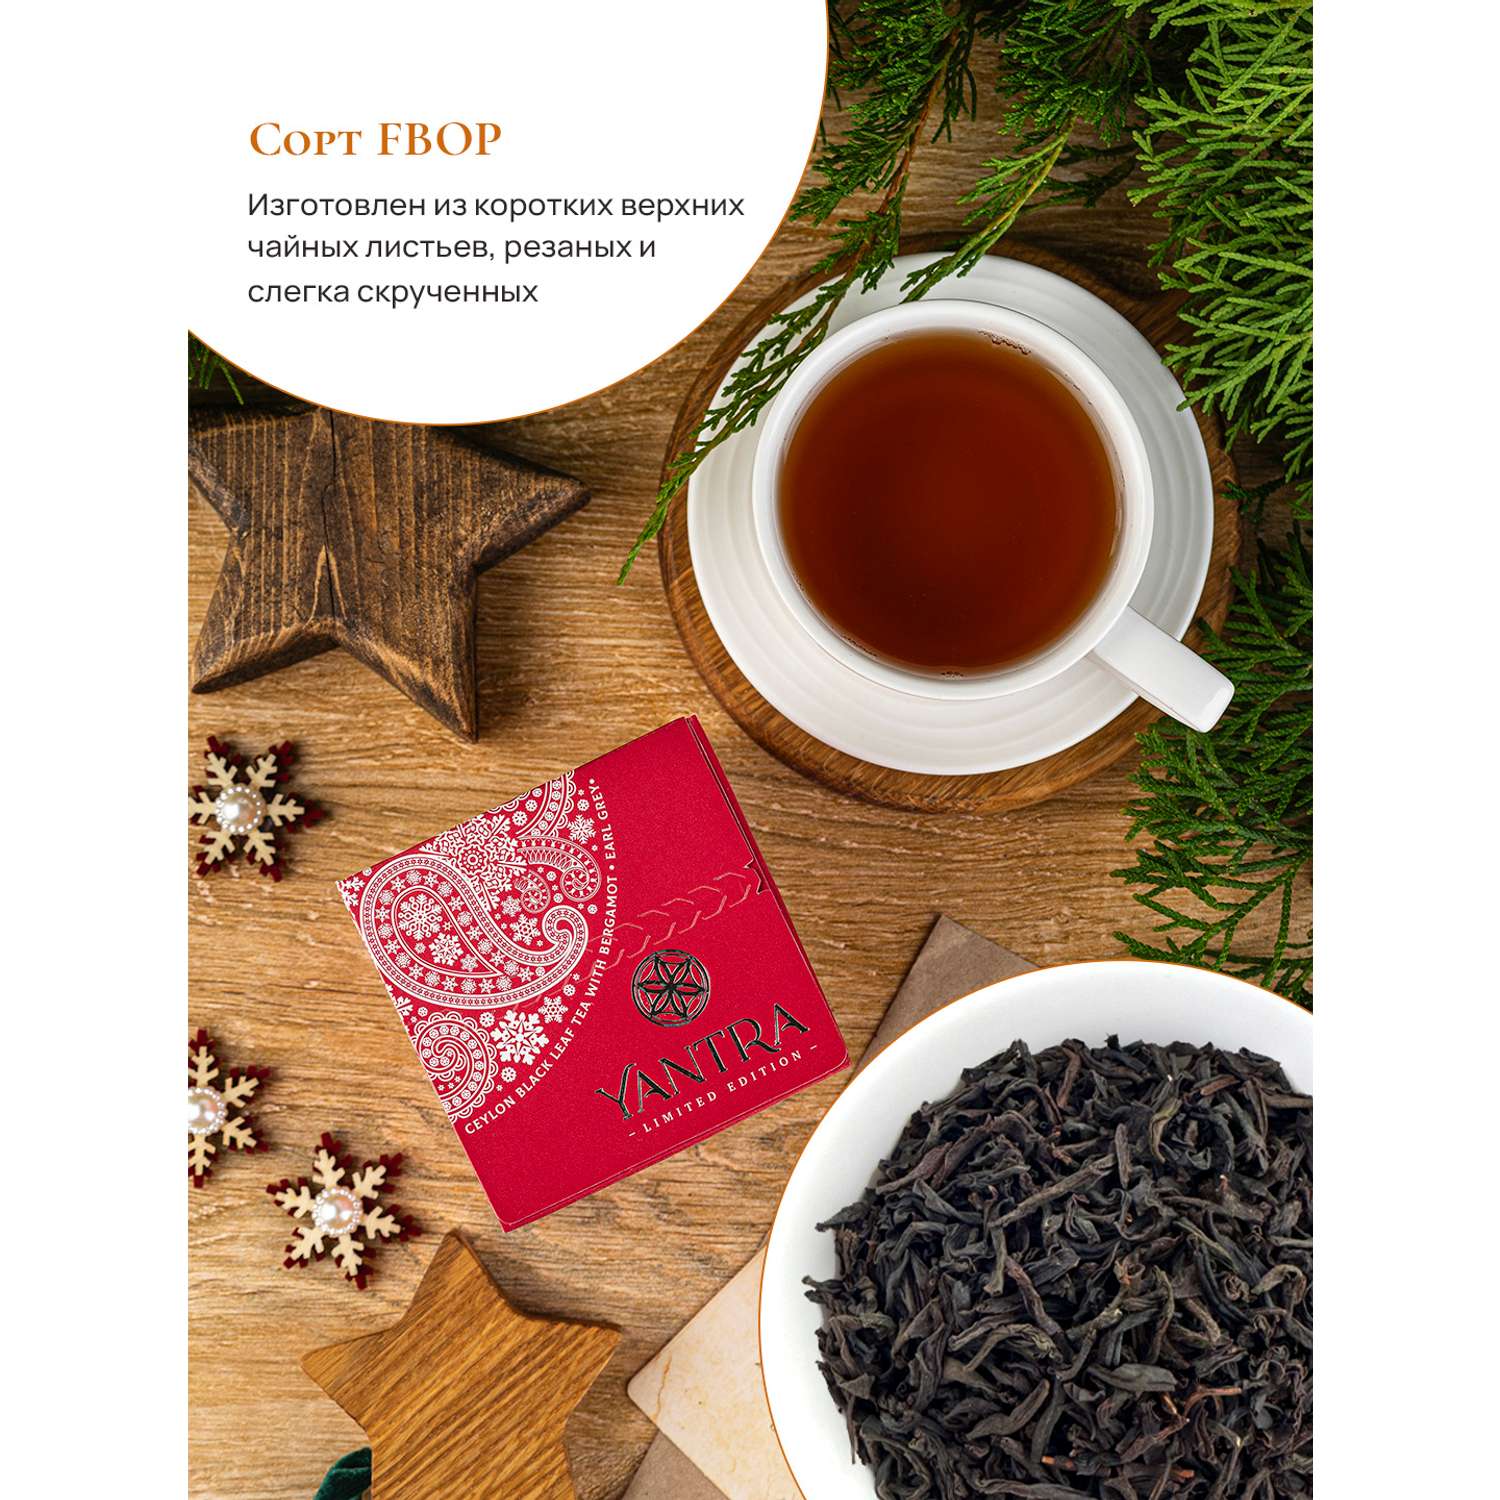 Чай Limited Edition Yantra чёрный листовой с бергамот Earl Grey стандарт FBOP 100 г - фото 3